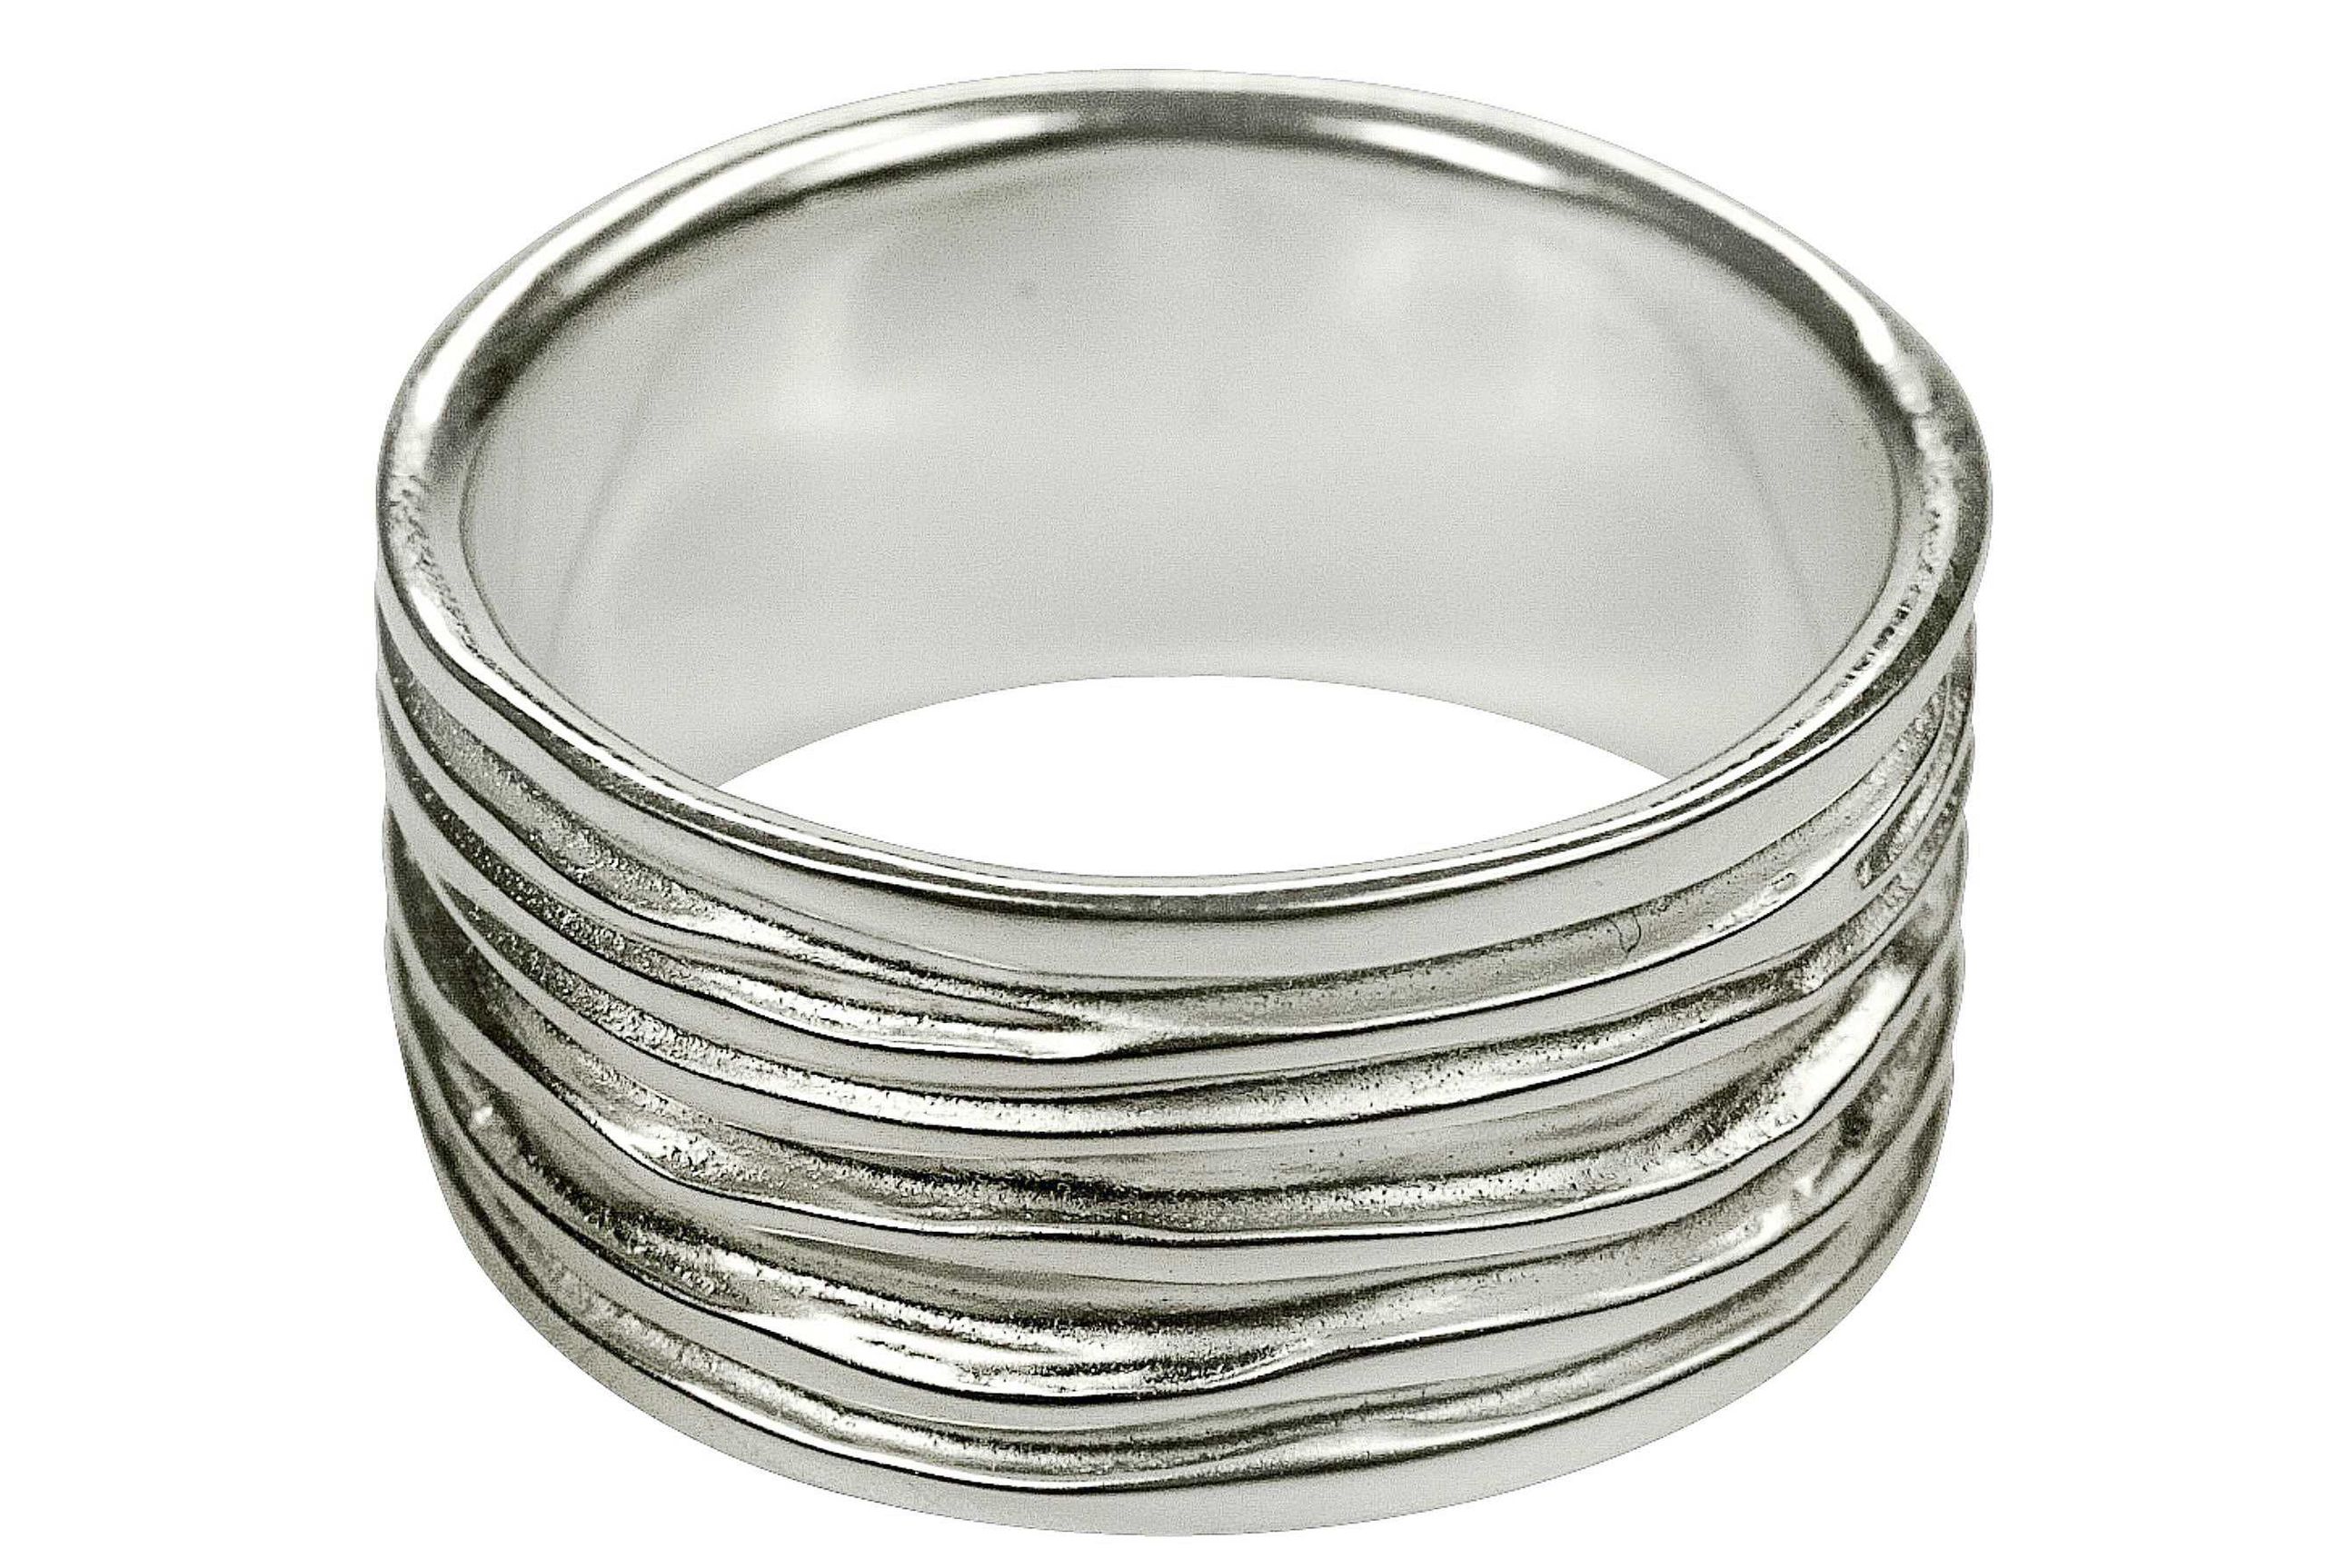 Breiter Silberring mit einer gefalteten Wellenstruktur als Oberfläche. Der Ring bietet sich als Schmuck für Damen und für Herren an.